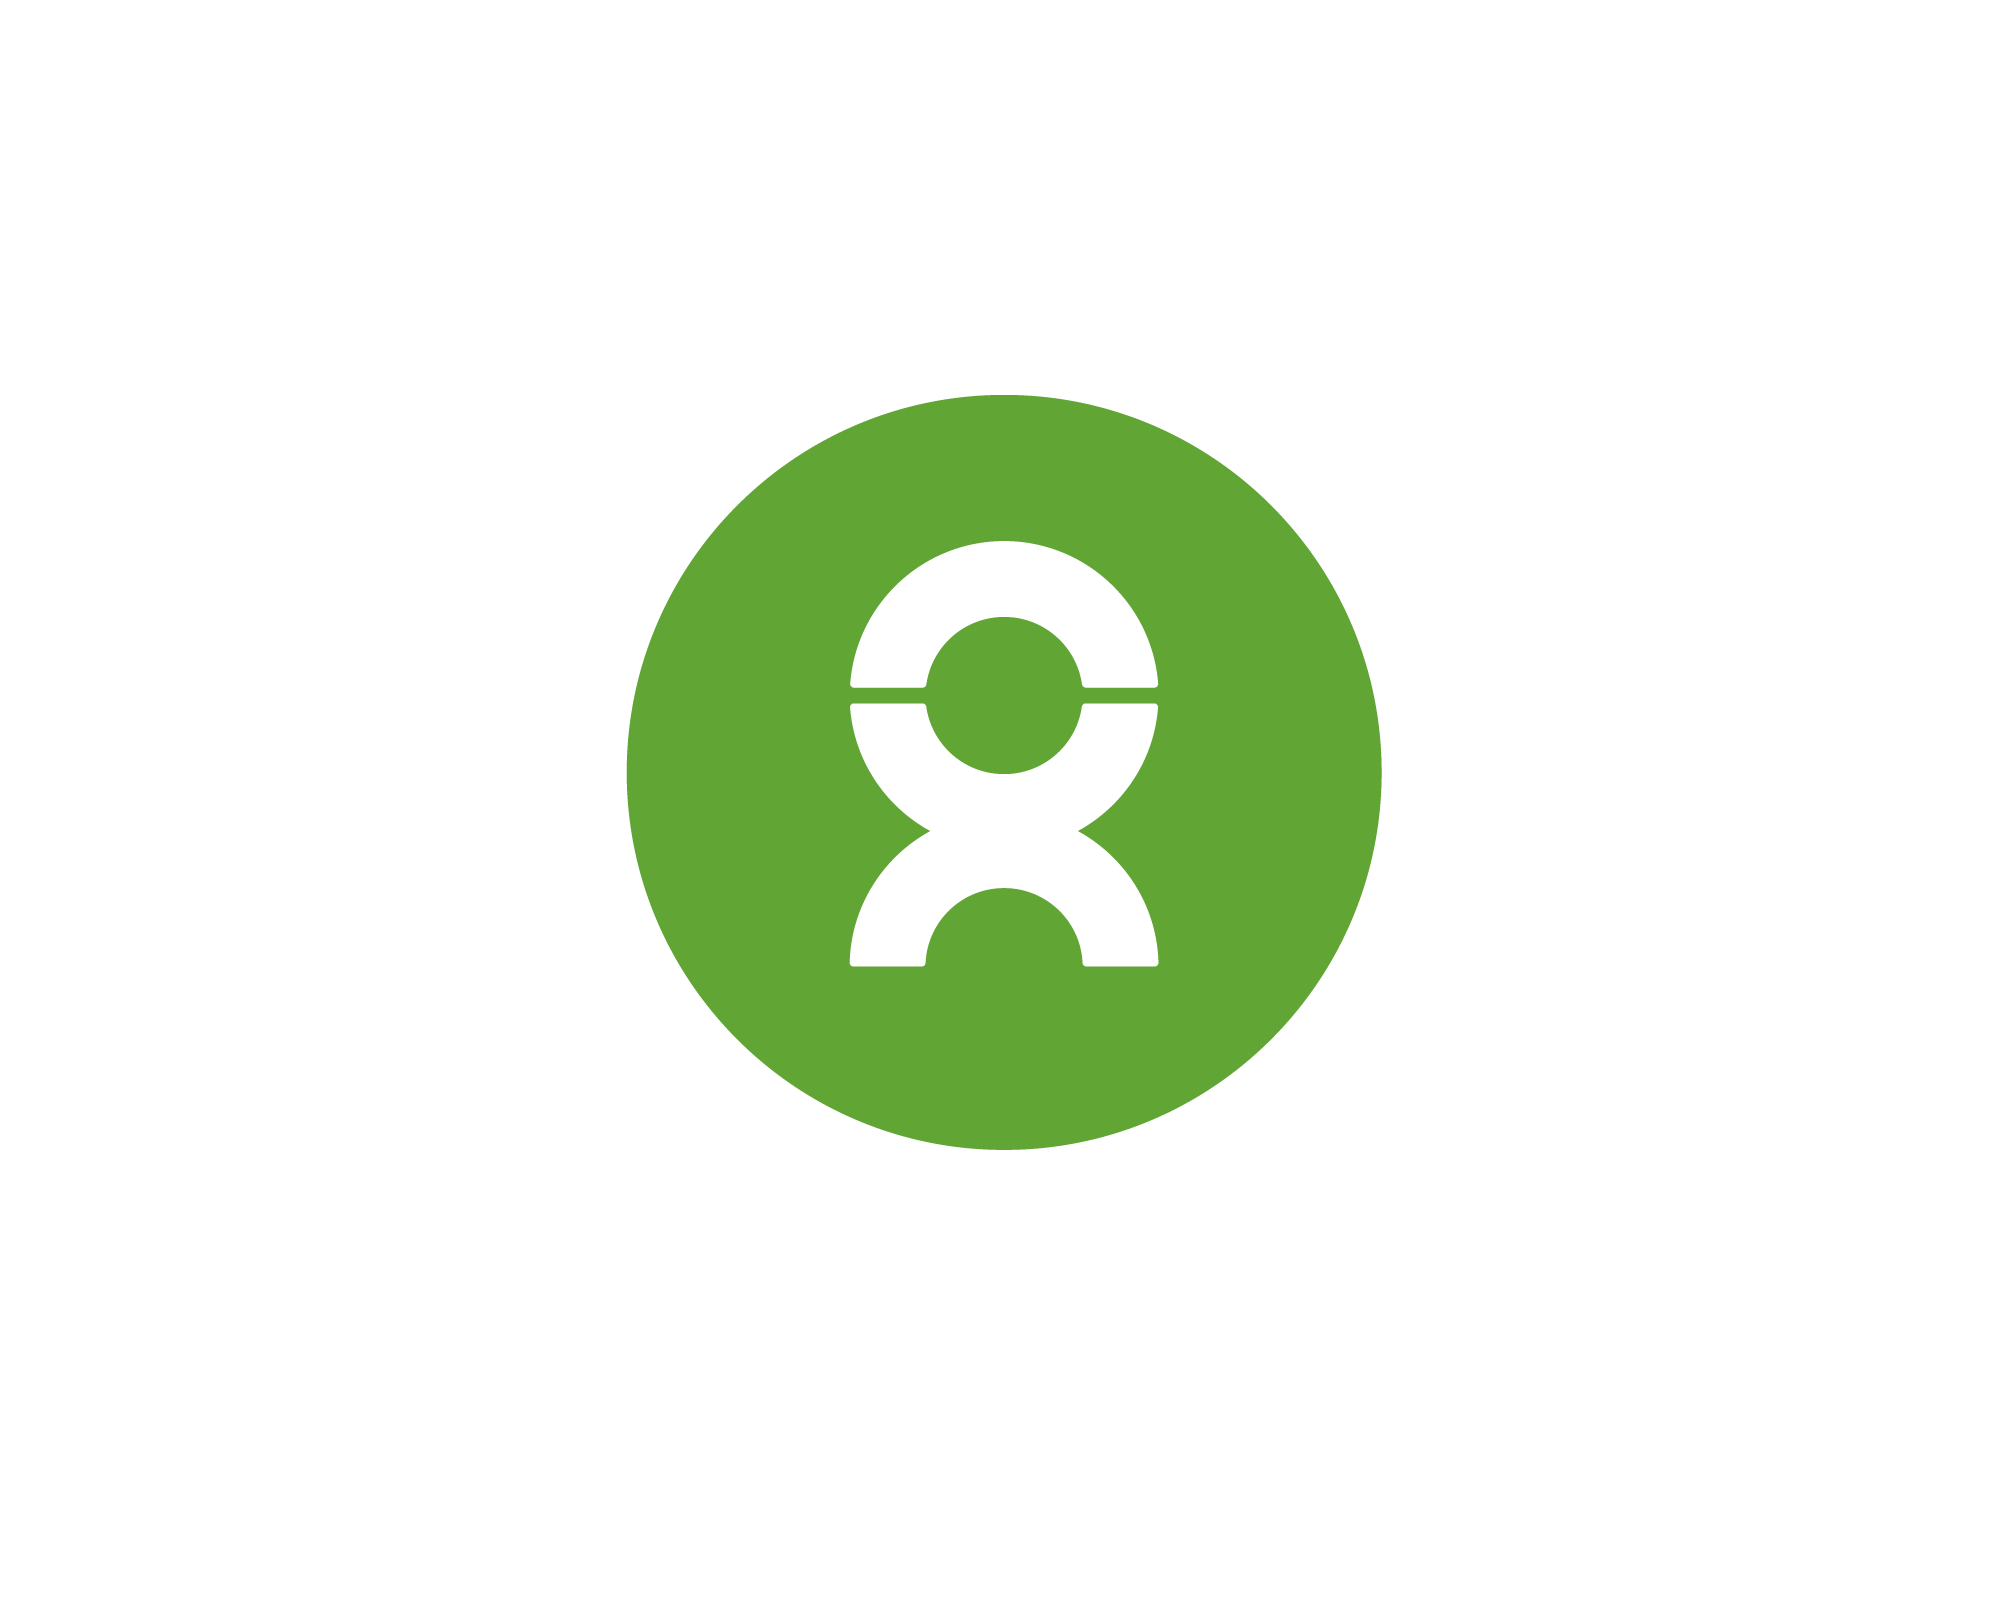 Green Organization Logo - Oxfam logo